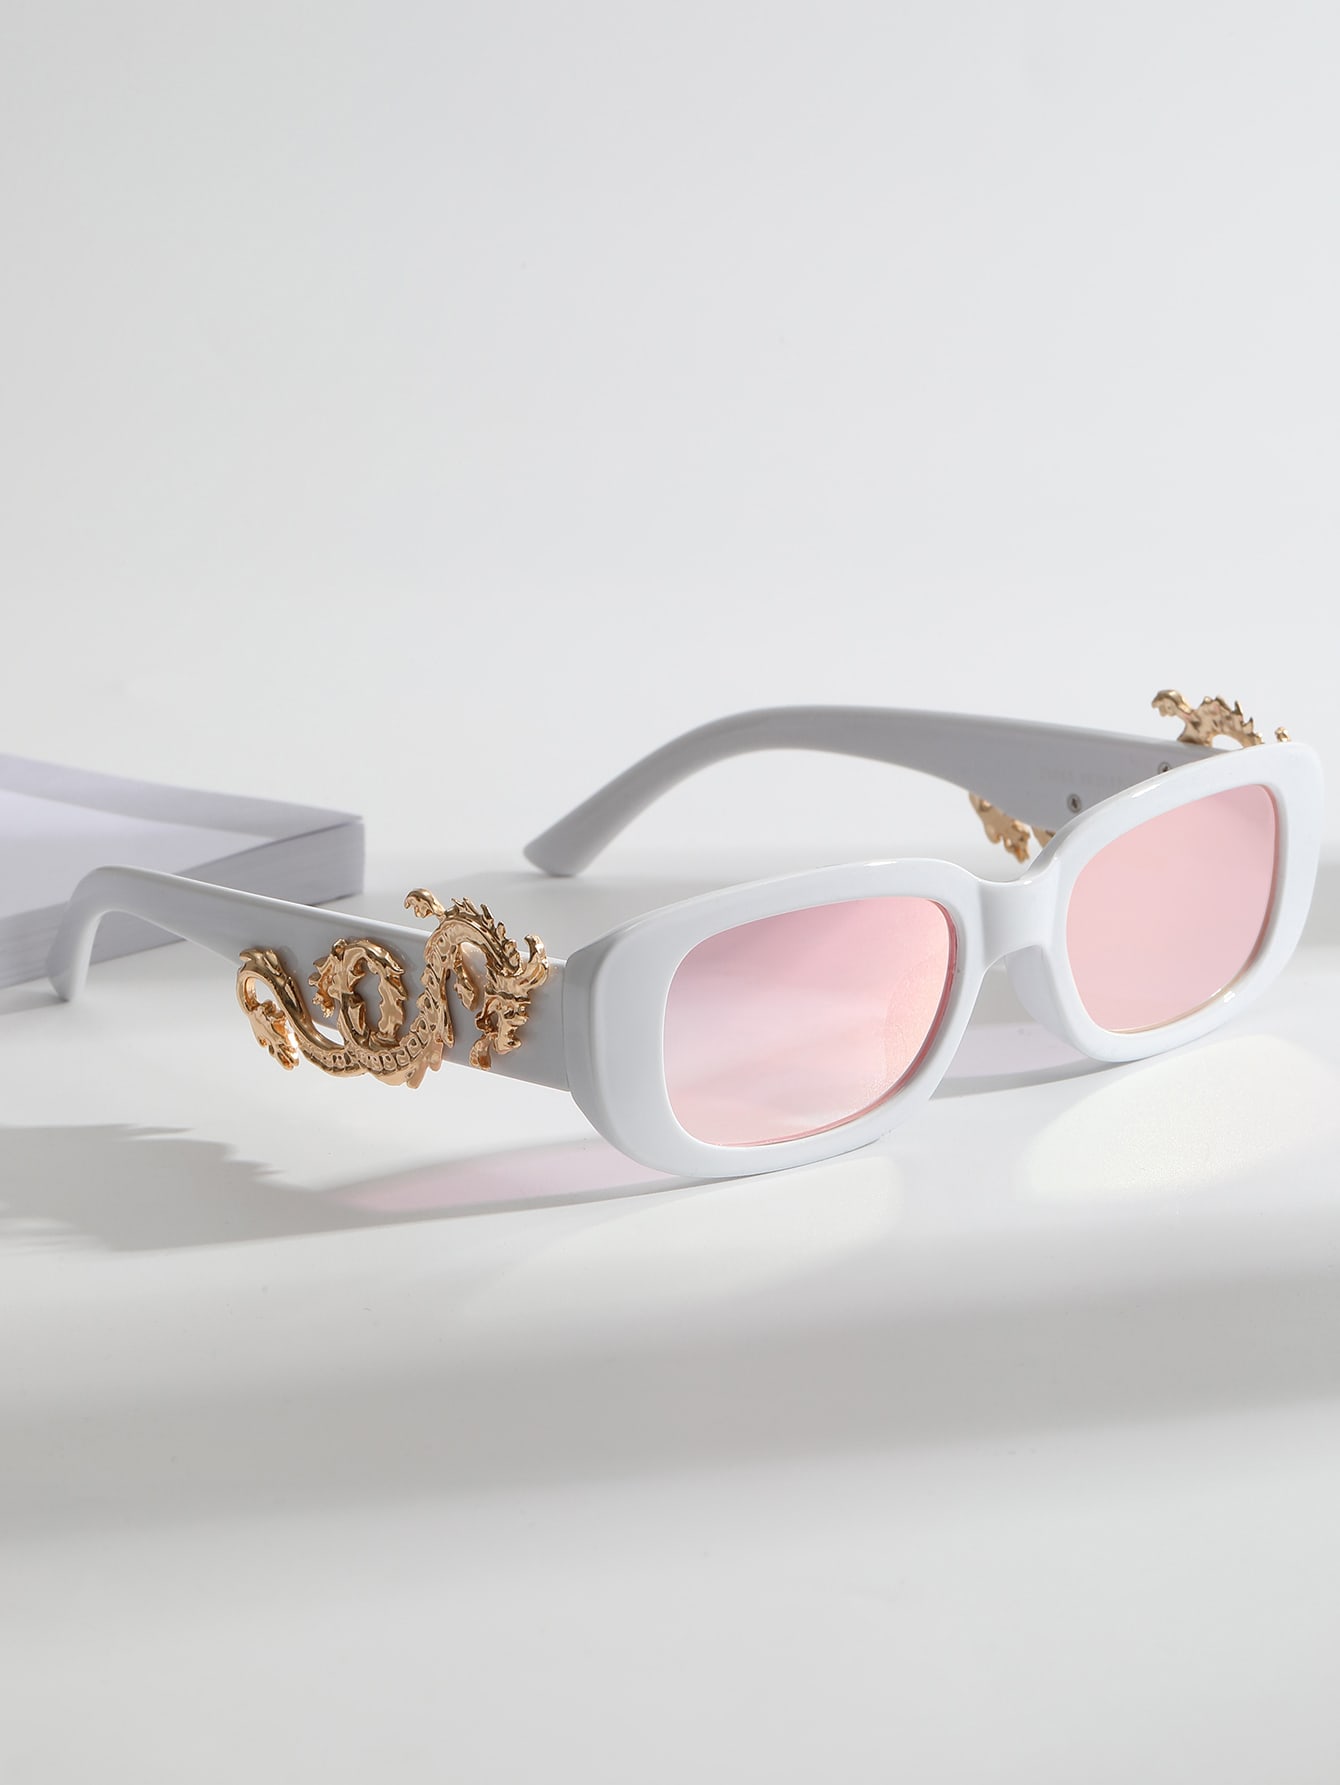 Модные очки с тонированными линзами в стиле дракона для модного винтажного ковбойского образа элегантного вида